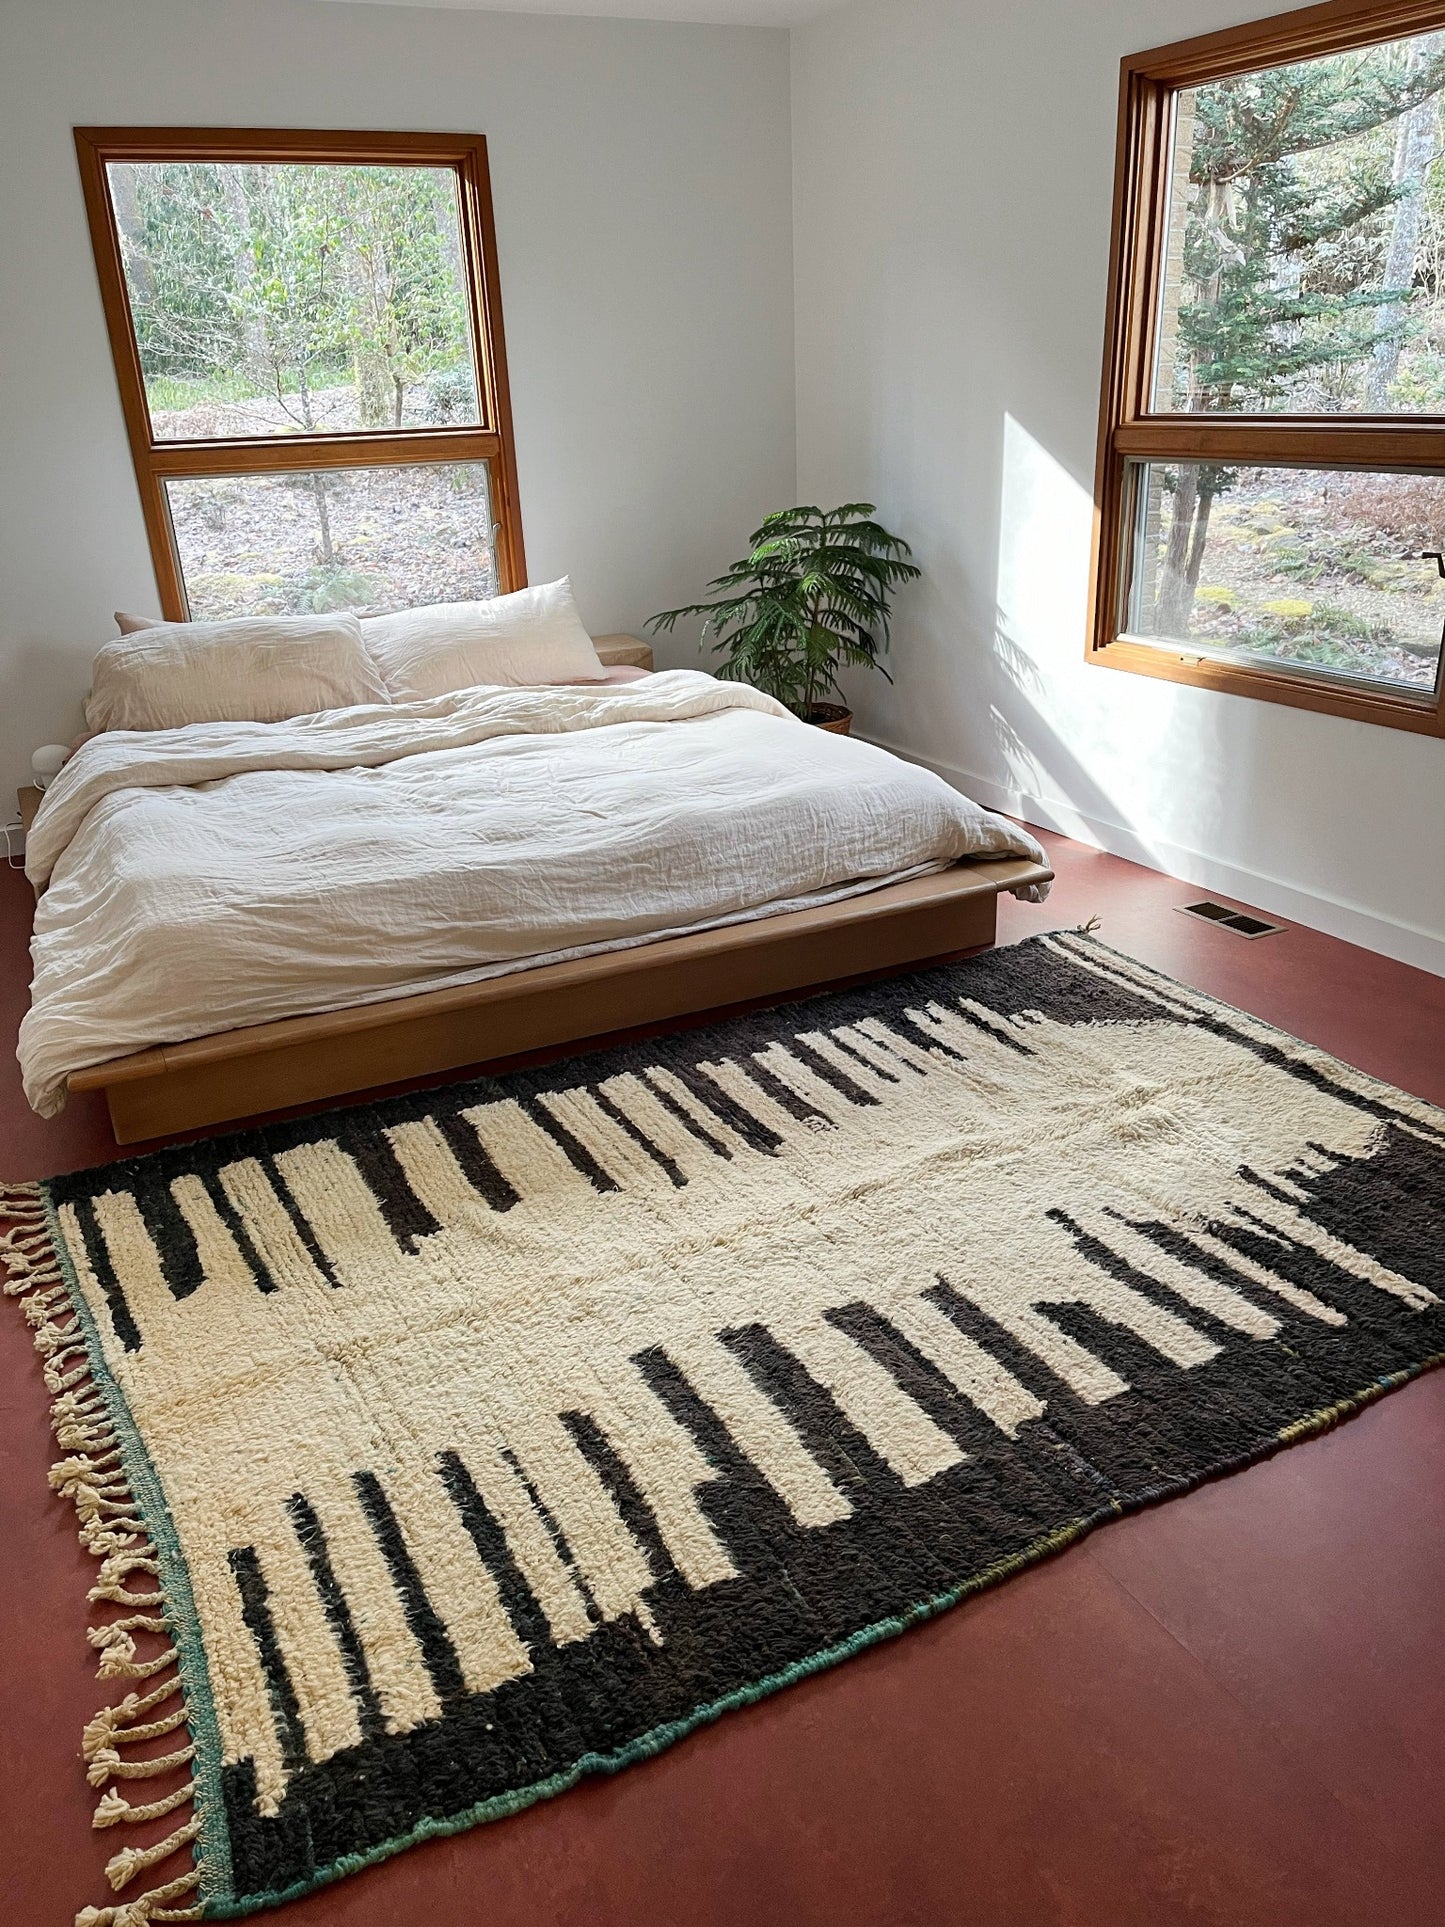 Style Calavera rug Moroccan in a Primary Bedroom